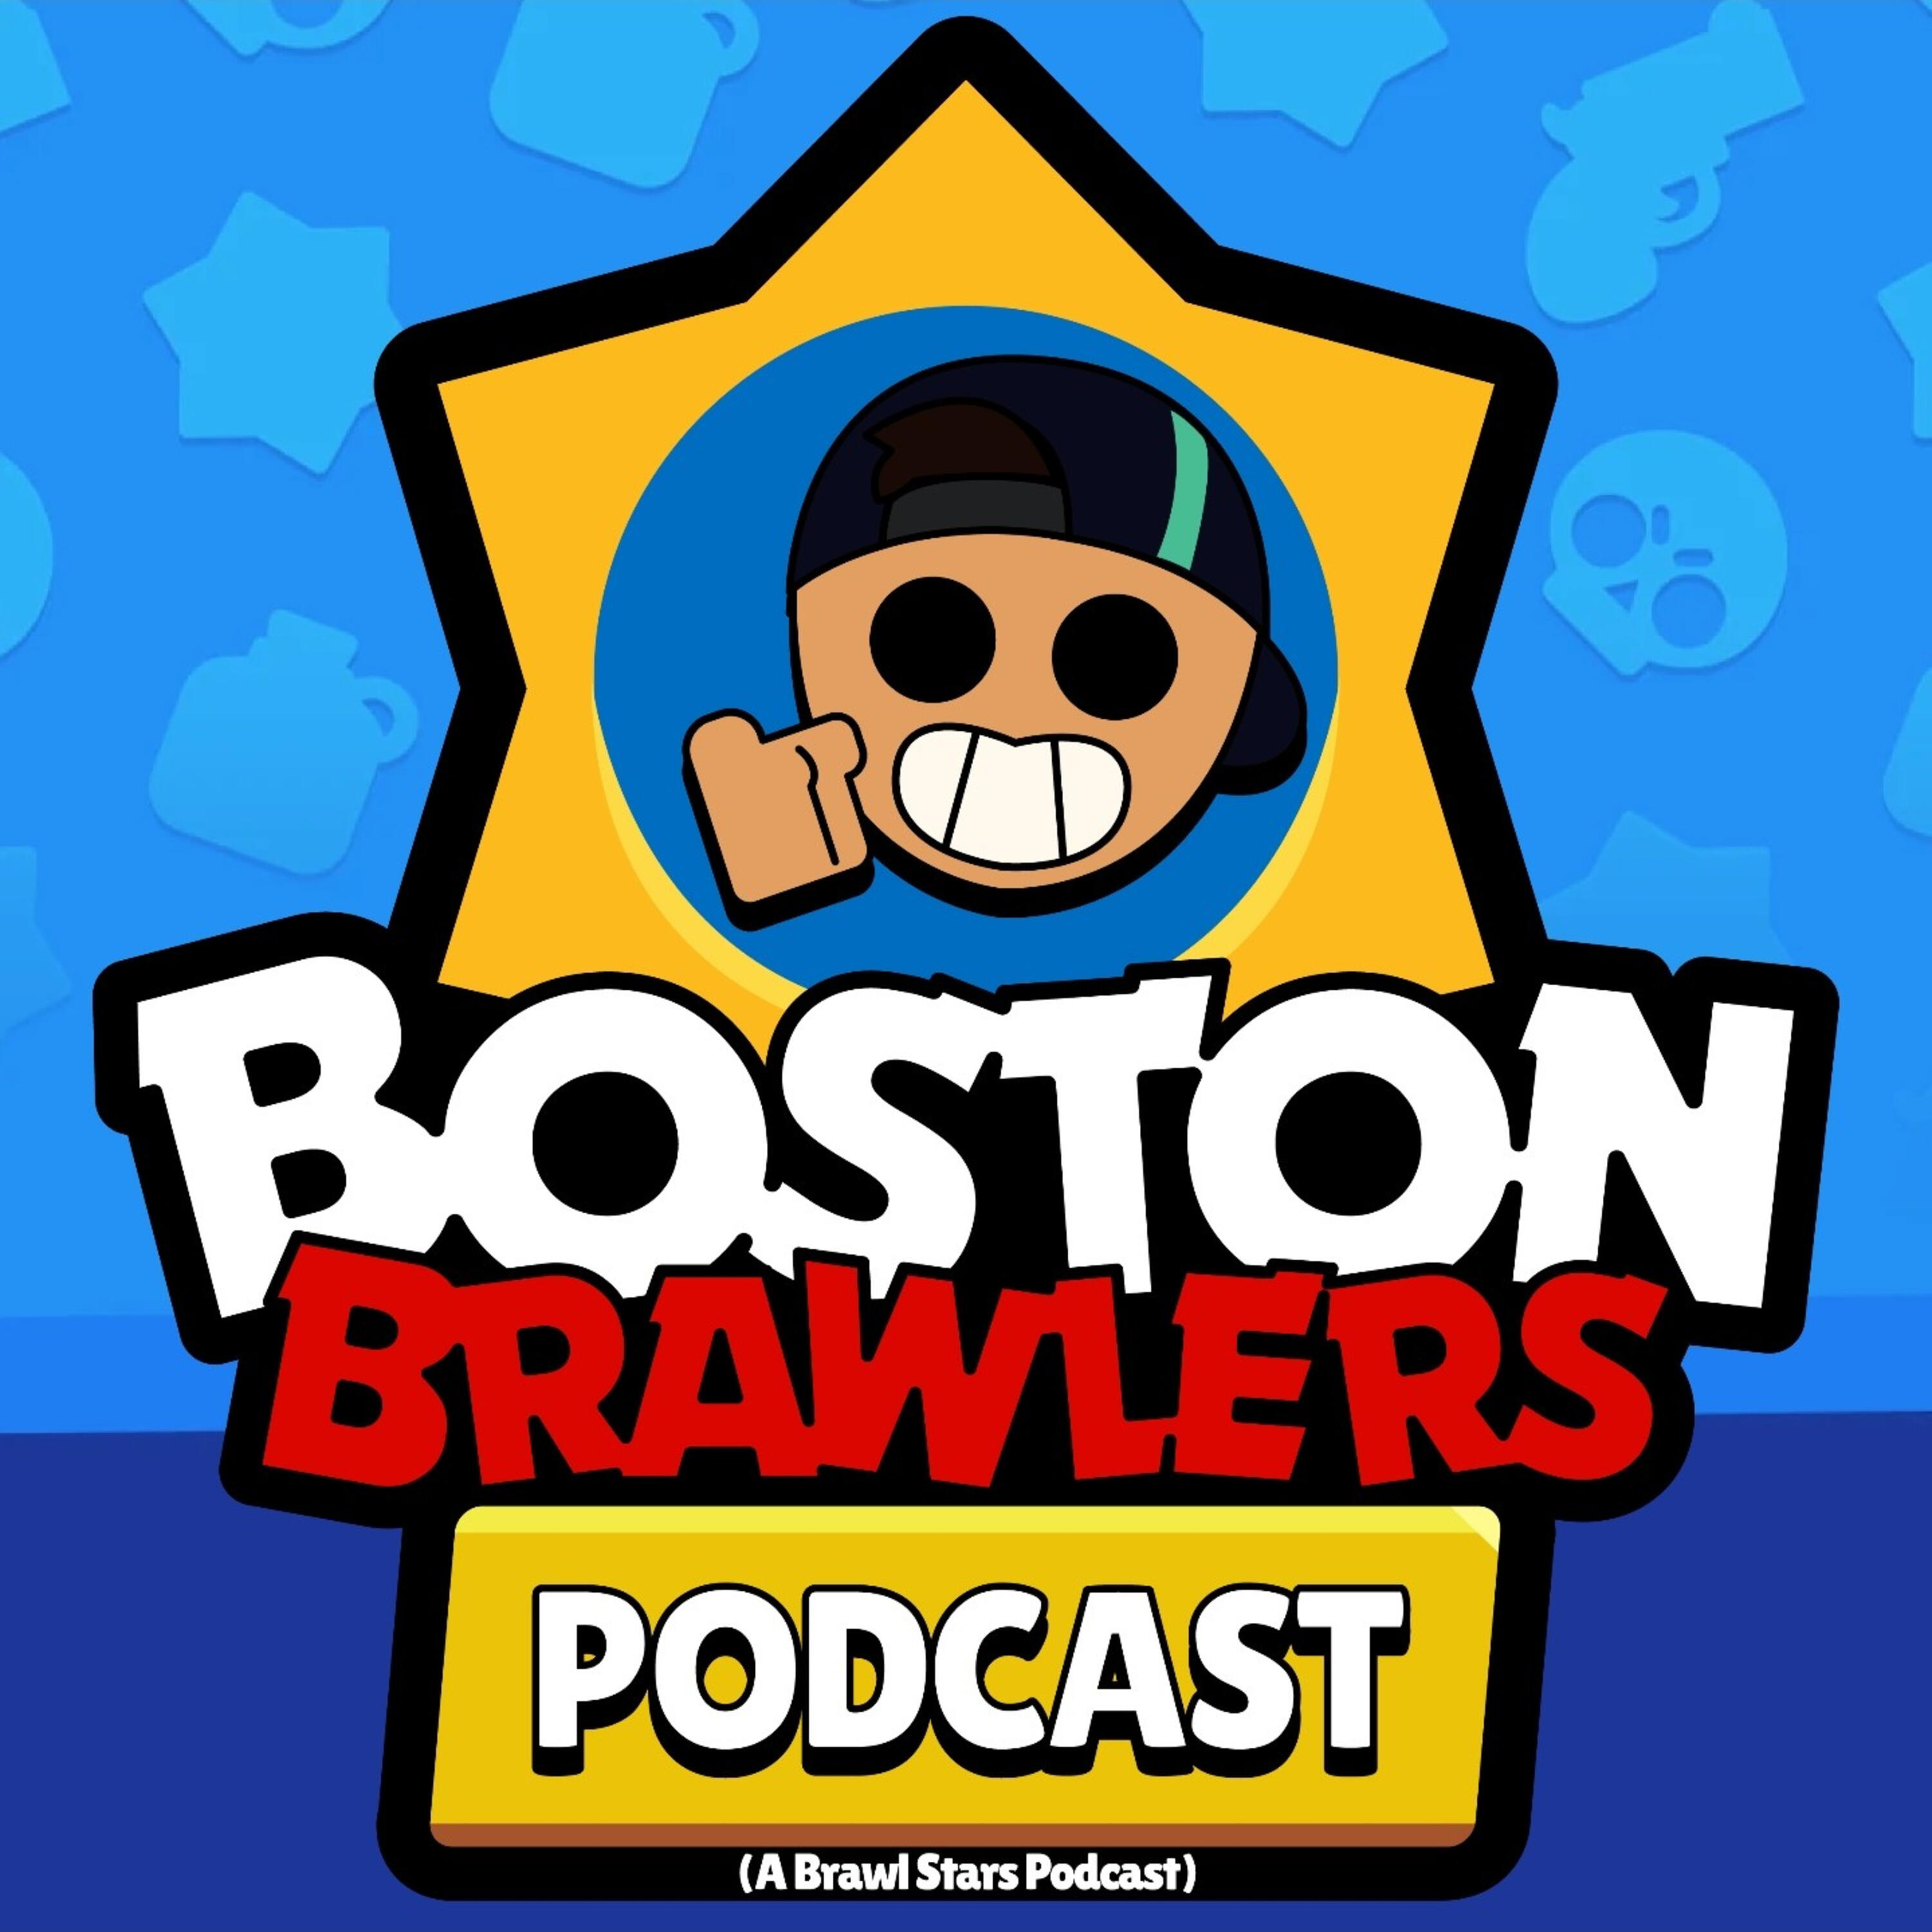 Boston Brawlers A Brawl Stars Podcast Iheartradio - how to rewatch brawl stars